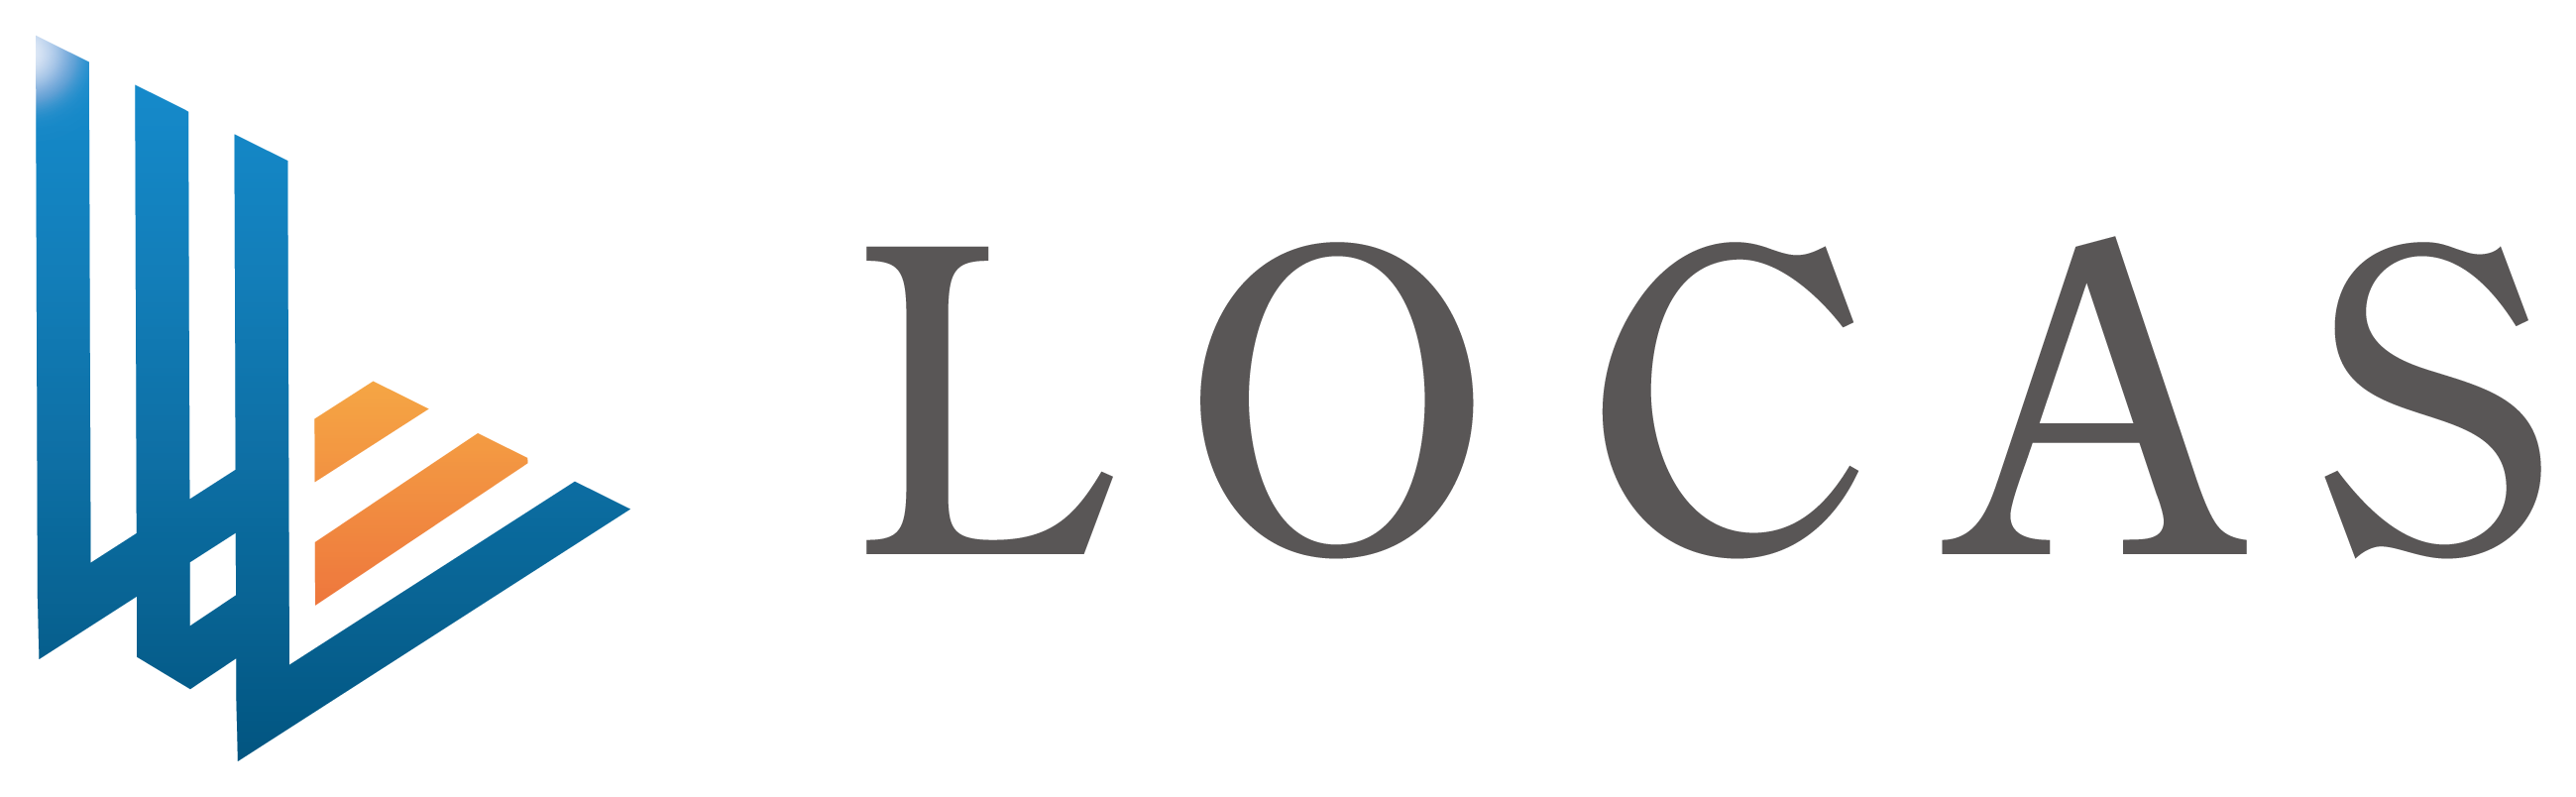 株式会社LOCAS